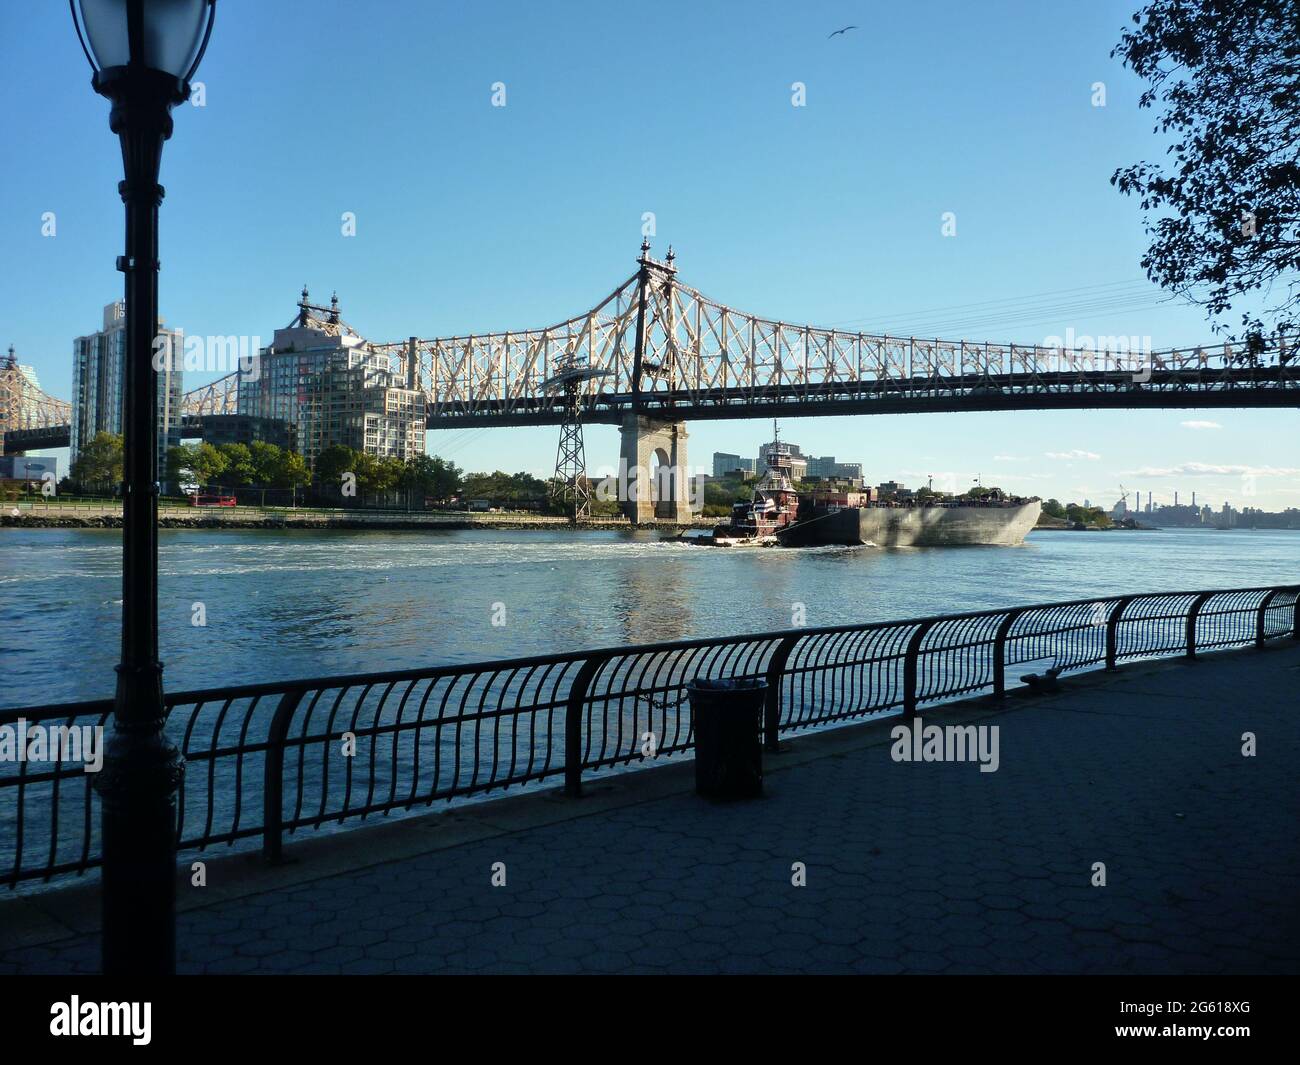 Le pont de la 59ème rue, également connu sous le nom de pont Queensboro, vu de Roosevelt Island. Copier l'espace. Banque D'Images